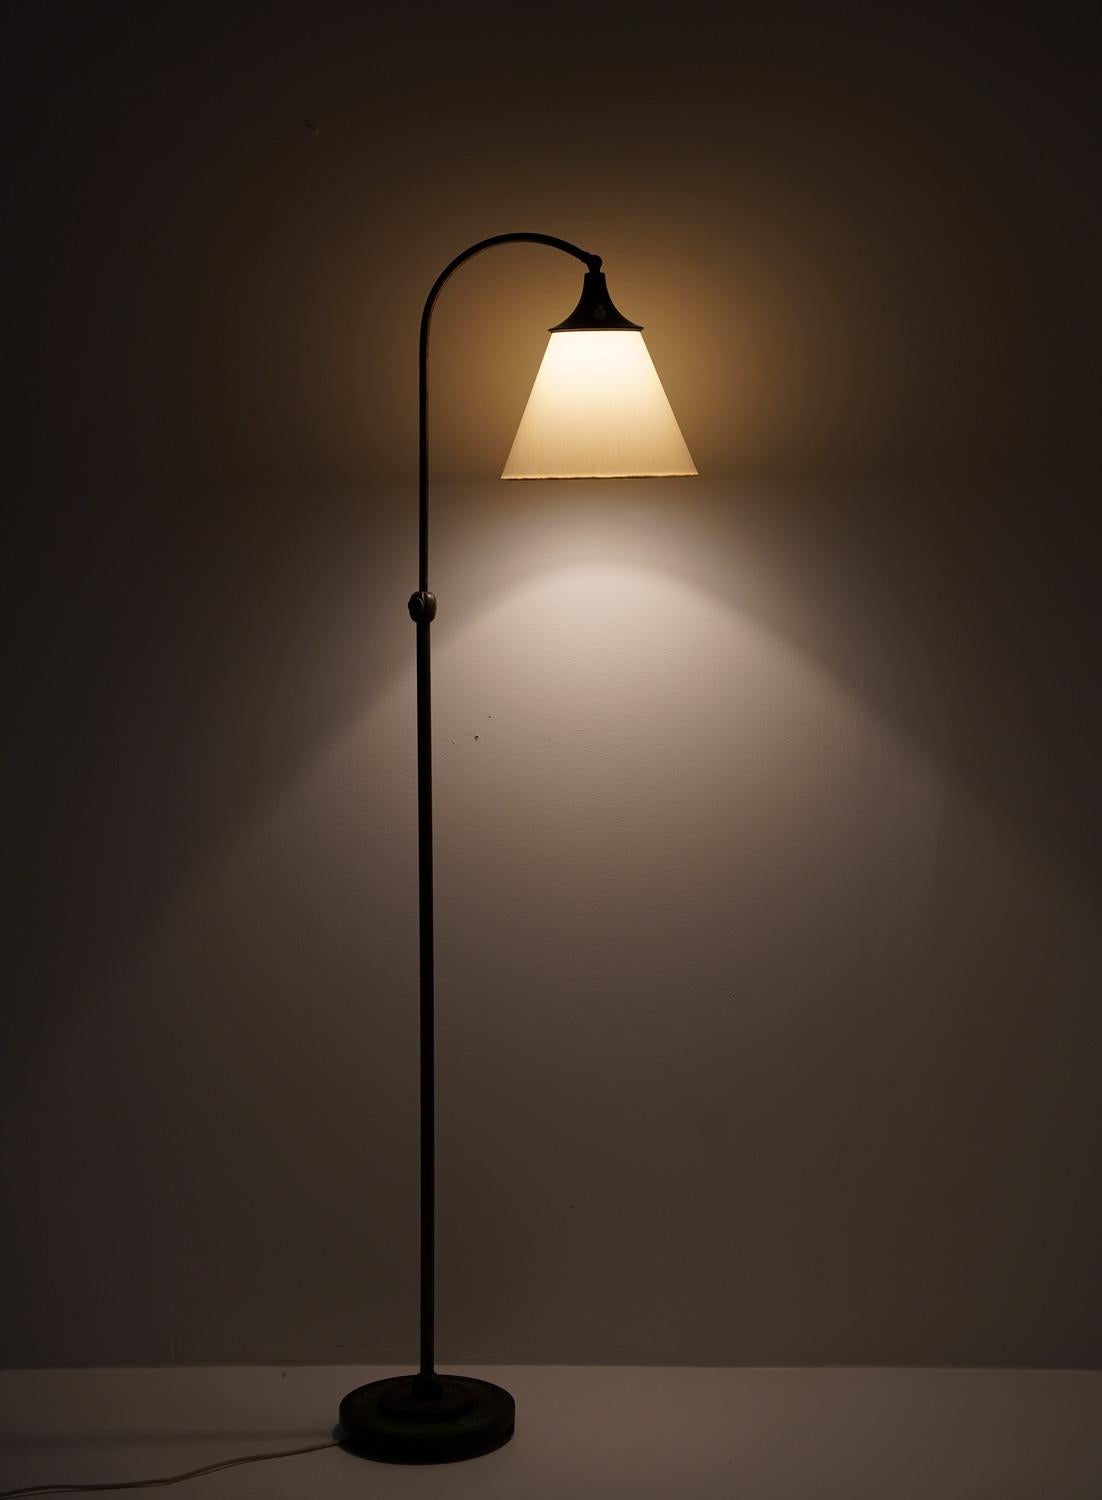 Hübsche Art-déco-Stehlampe, hergestellt in Schweden, 1920er Jahre. 
Die Leuchte besteht aus einem Sockel und einer Stange aus Bronze, die einen hakenförmigen Schwenkarm tragen, der den Schirm hält. Die Lampe hat ein halbminimalistisches Design mit